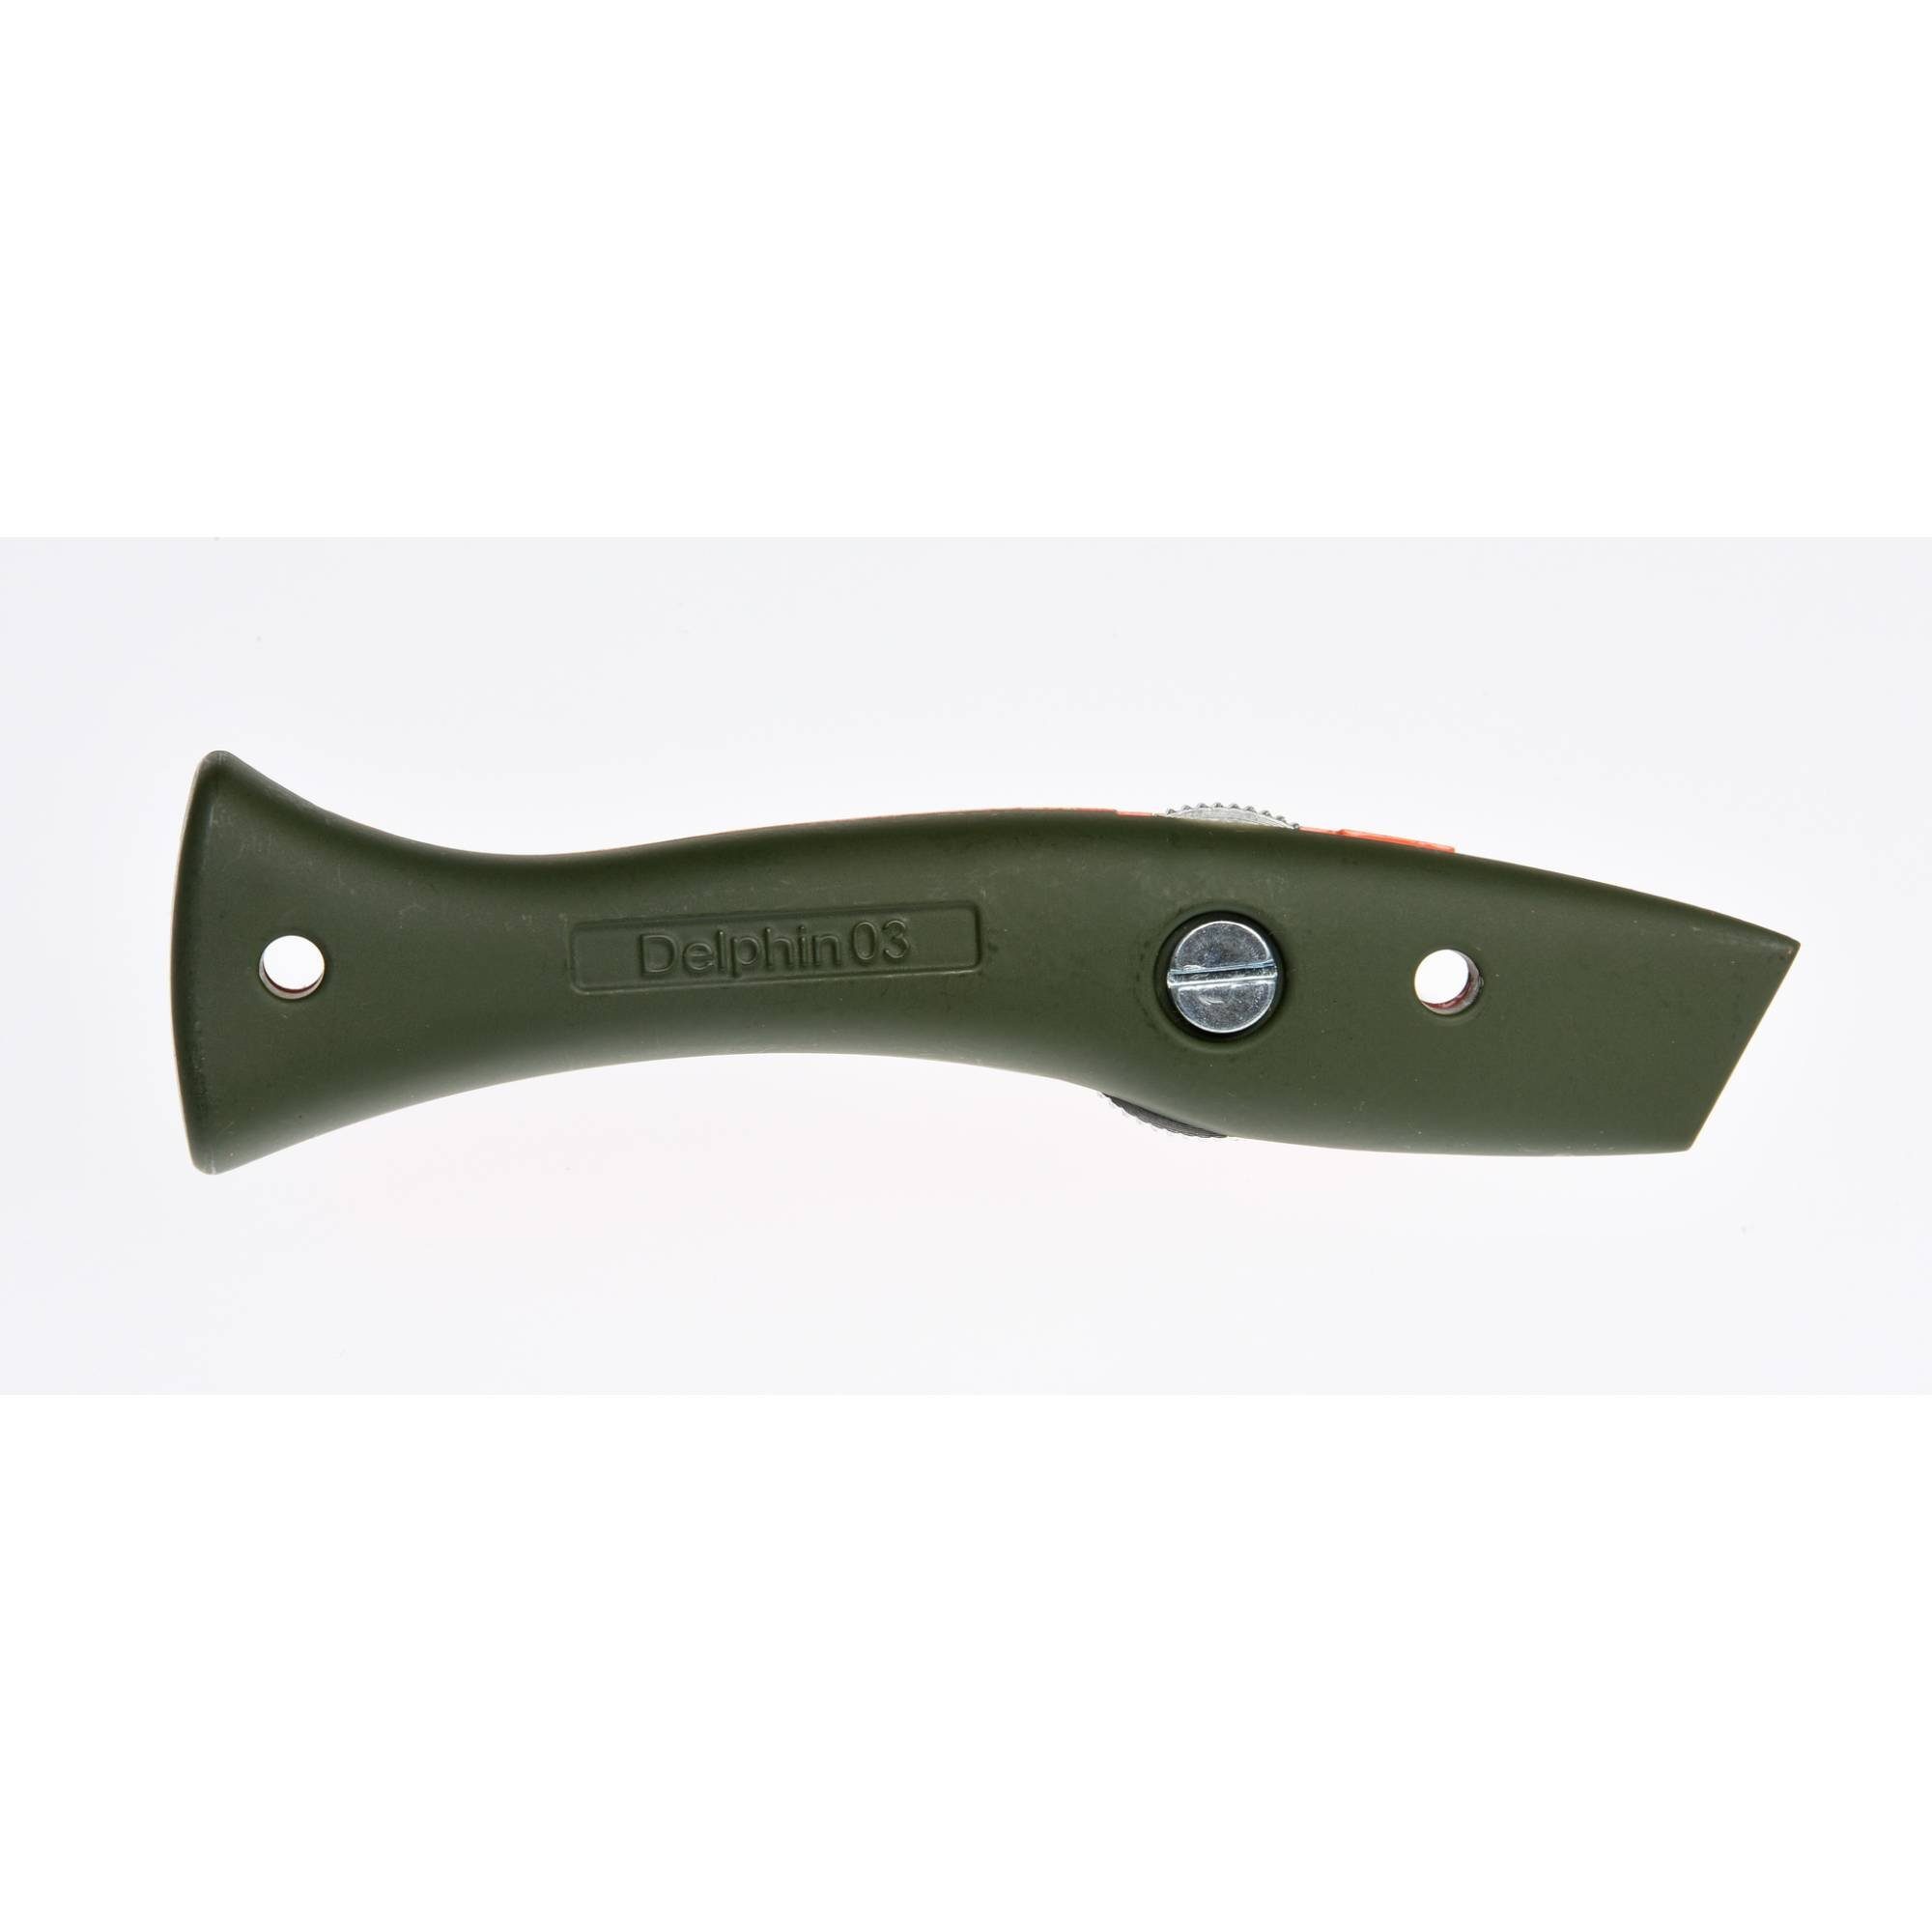 Cutter Delphin Universalmesser Style-Edition Delphin®-03 Olivgrün orange Cuttermesser -